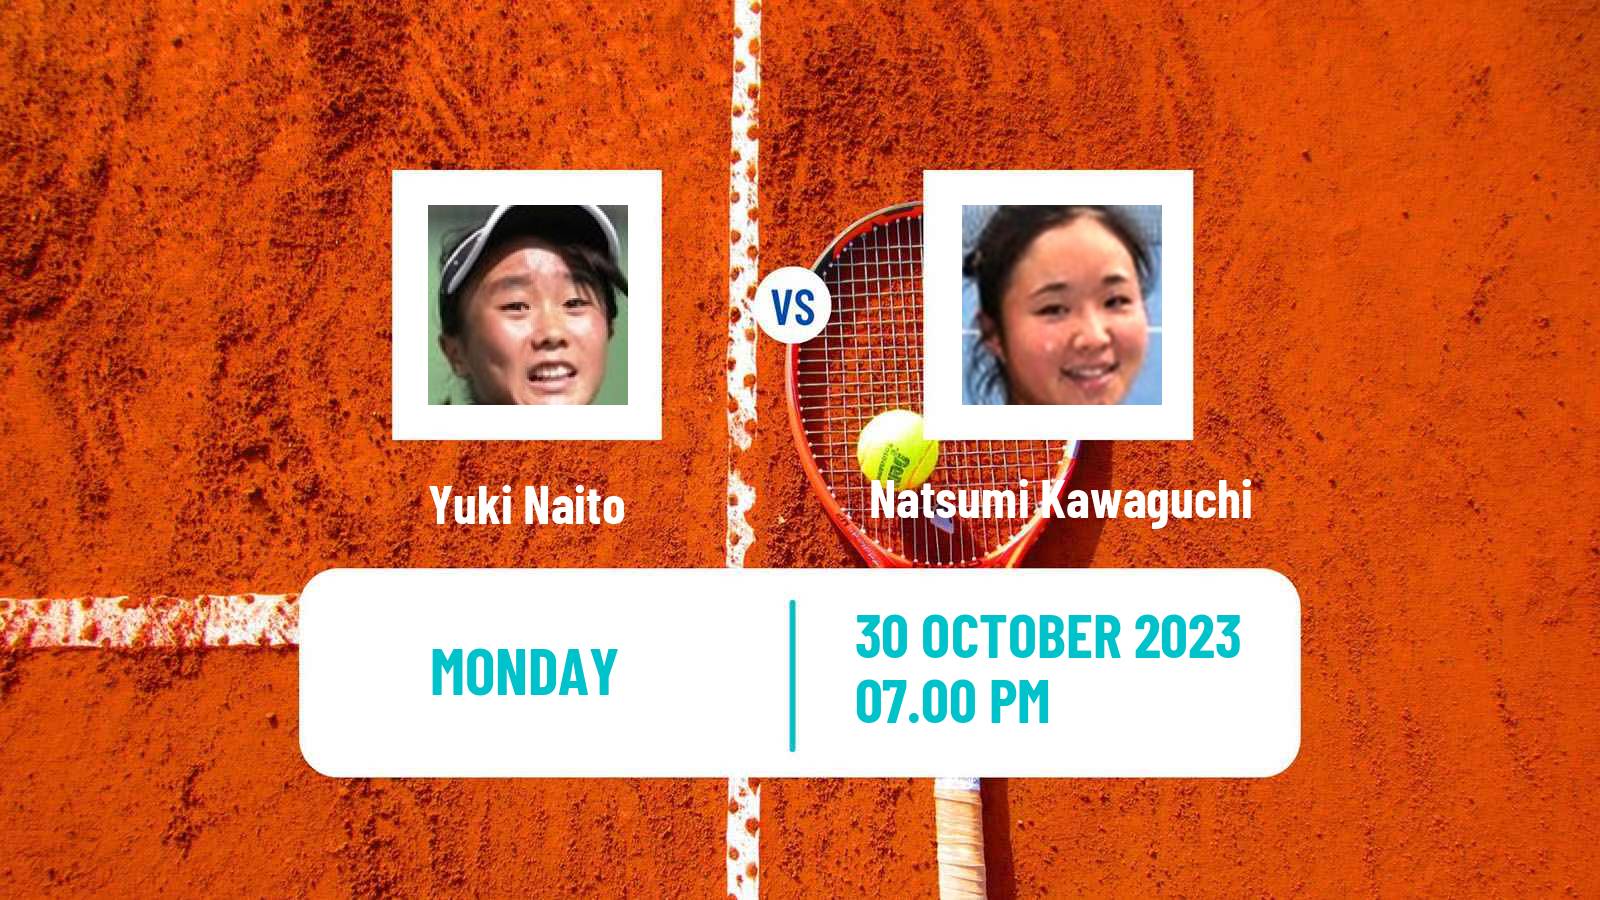 Tennis ITF W60 Sydney Women 2023 Yuki Naito - Natsumi Kawaguchi